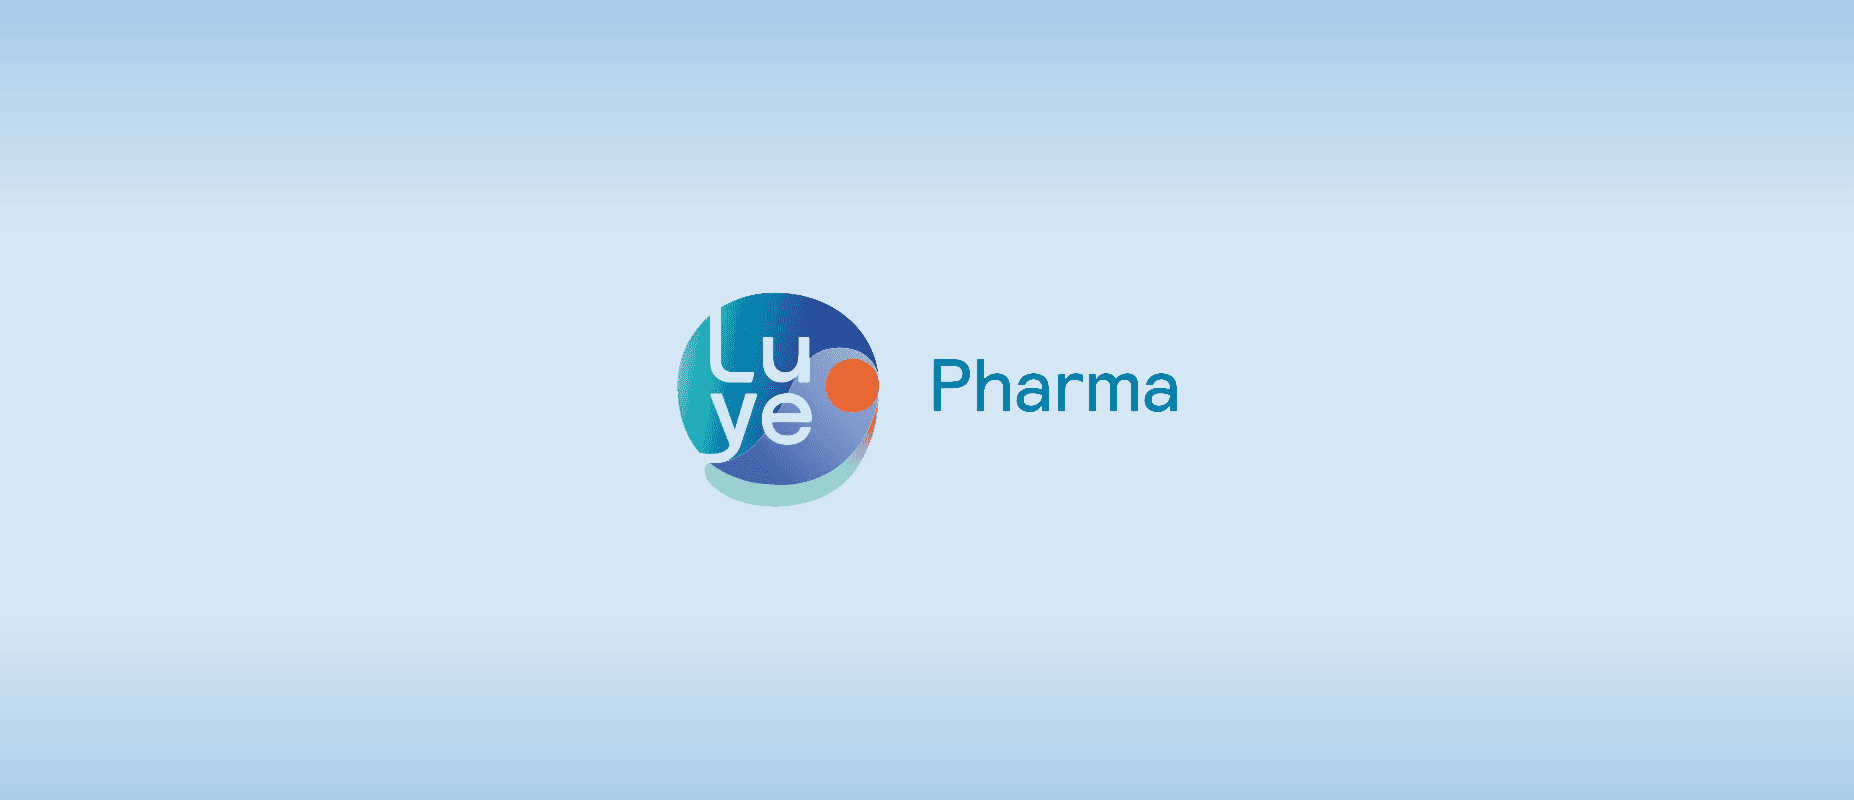 Luye Pharma Logo